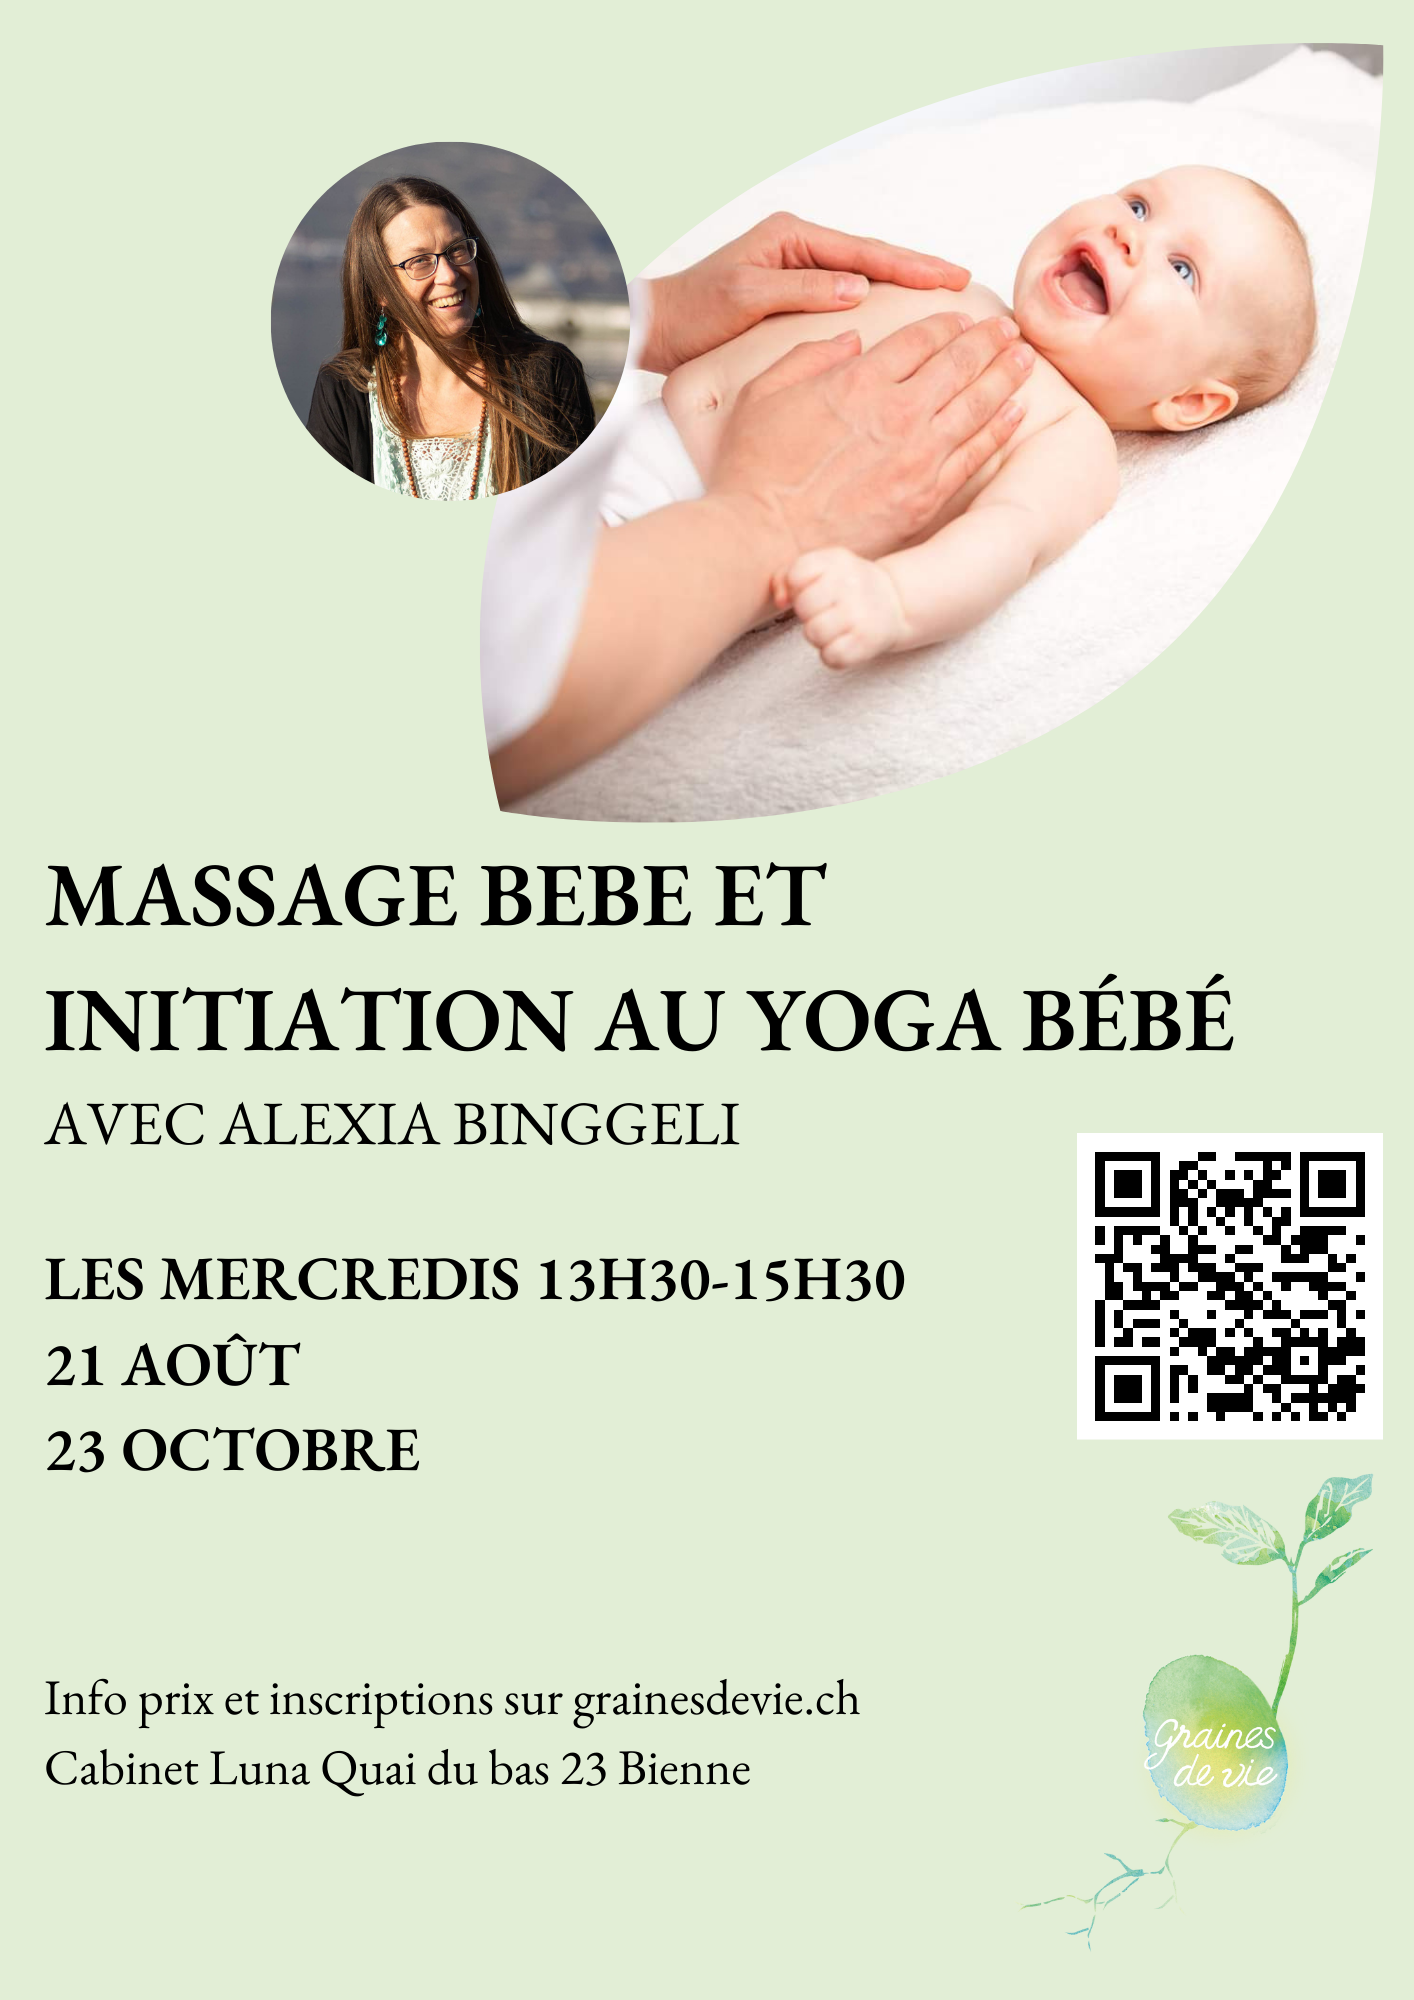 Massage bébé et initiation au yoga bébé